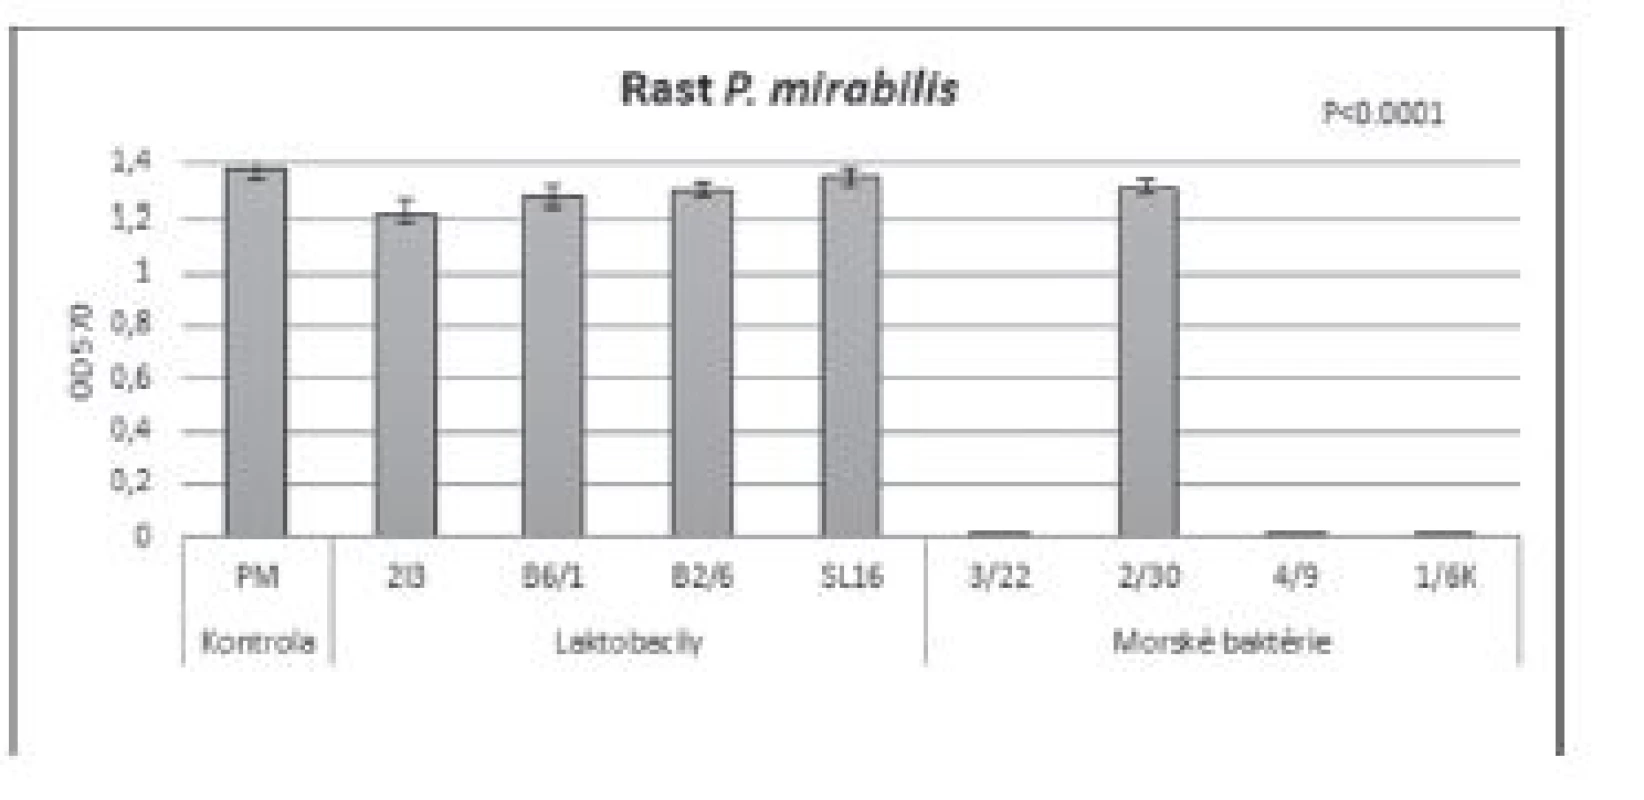 Vplyv BS (c = 8,57 mg/ml) izolovaných z laktobacilov
a morských baktérií na rast P. mirabilis CCM 7188